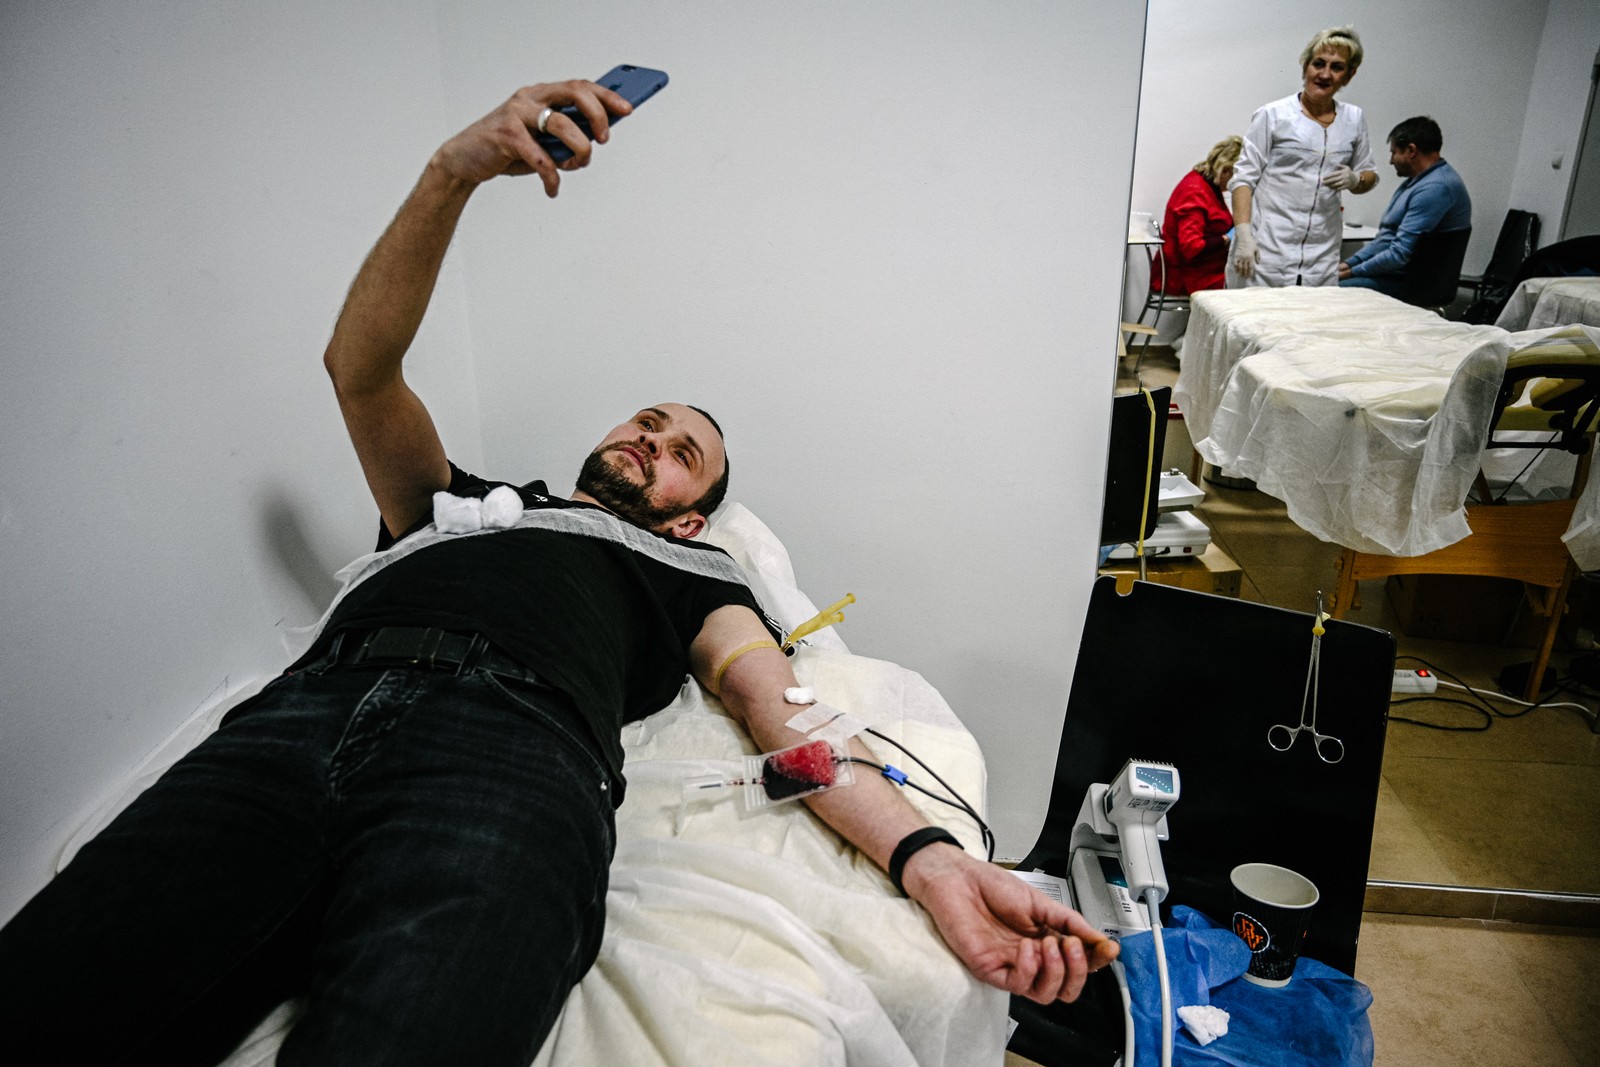 Um homem tira uma selfie enquanto doa sangue para os militares, como parte do evento de caridade "Torne-se um doador de sangue - Confesse seu amor pelo exército ucraniano", na cidade ucraniana ocidental de Lviv.  — Foto: YURIY DYACHYSHYN / AFP - 14/02/2023